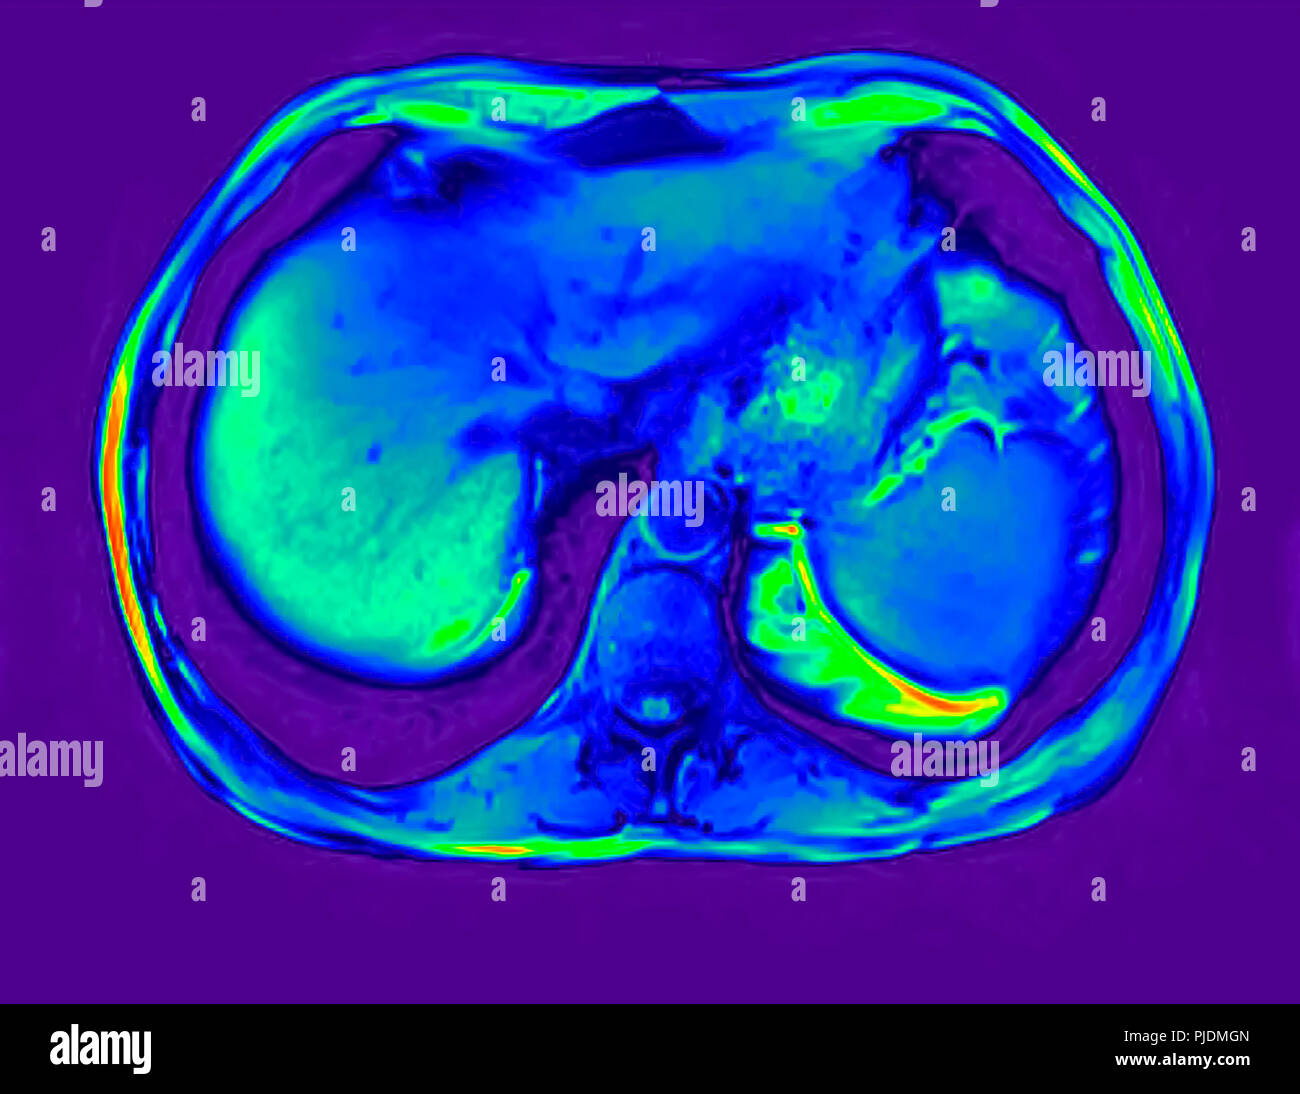 Querschnitt abdomen MRT-Untersuchung von 60 Jahre alten männlichen Patienten mit Nierensteinen Stockfoto